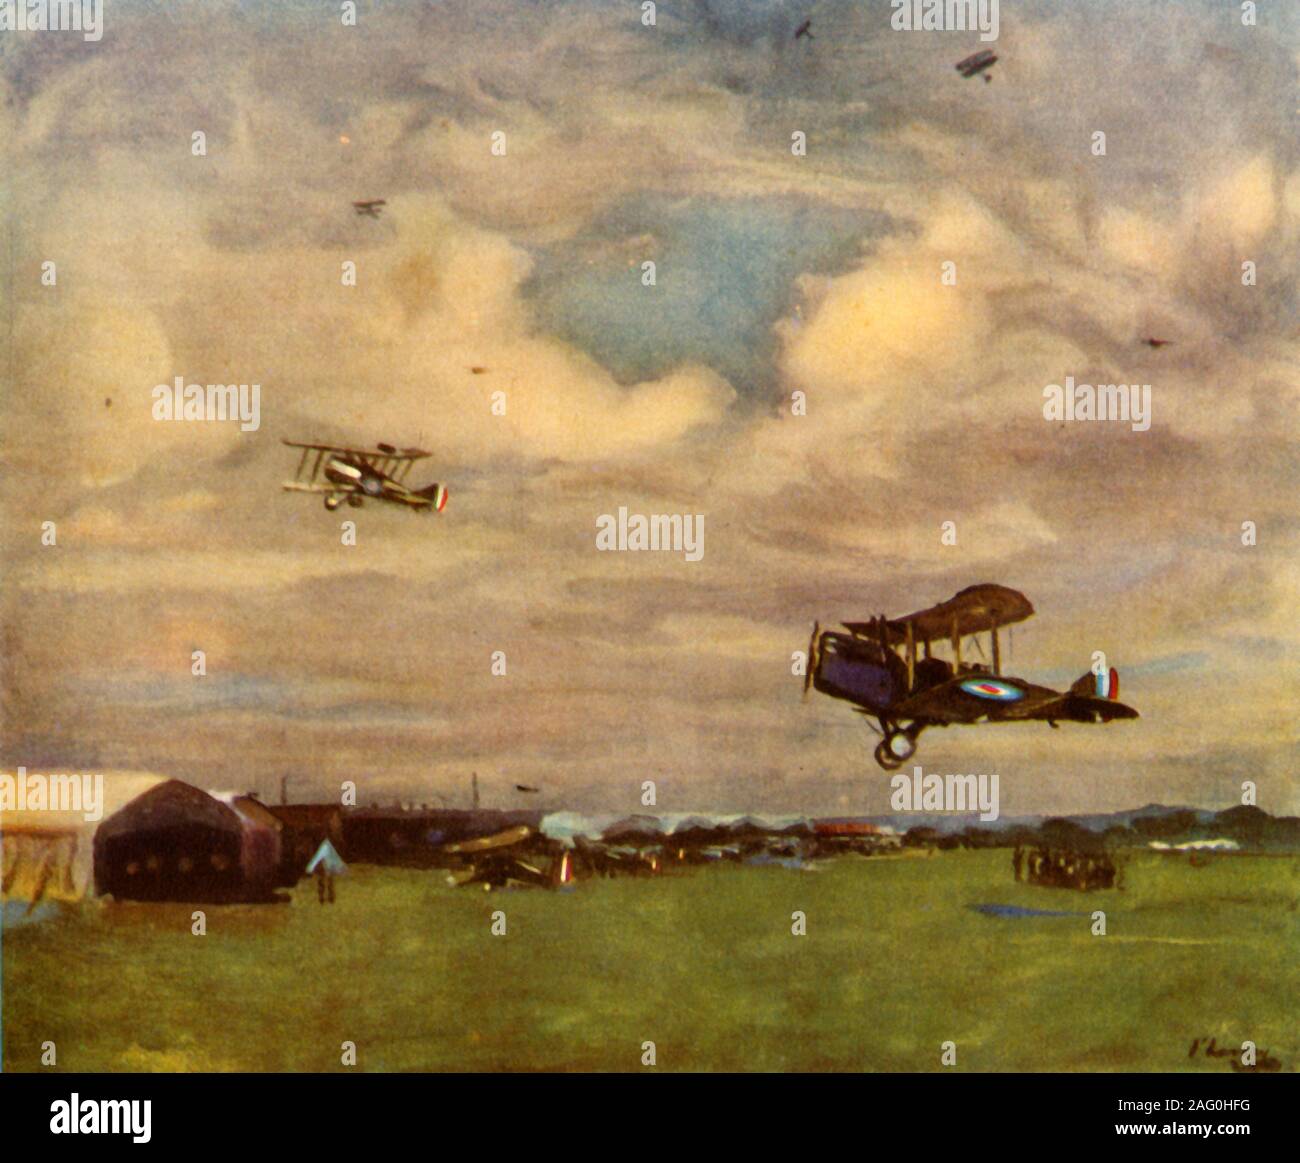 'Un aérodrome en 1918', (1944). Des biplans britanniques dans l'air au-dessus d'un aérodrome au cours de la Première Guerre mondiale. À partir de la Grande-Bretagne dans l'air", par Nigel Tangye. [Collins, Londres, 1944] Banque D'Images